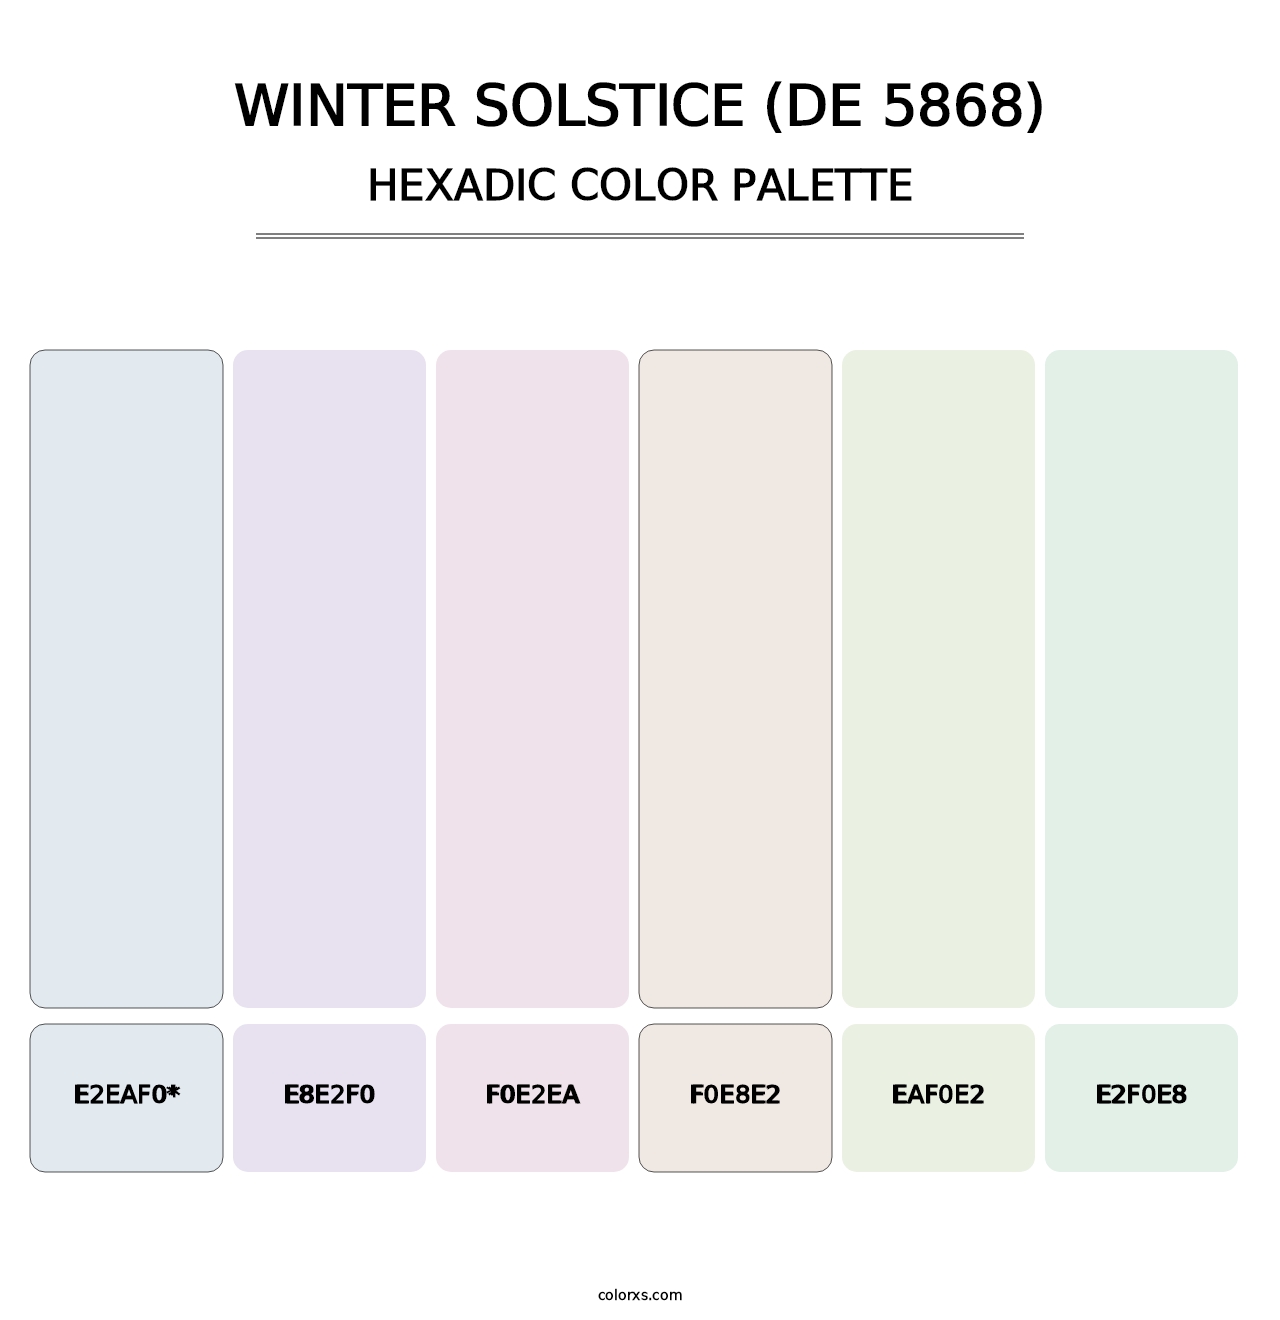 Winter Solstice (DE 5868) - Hexadic Color Palette